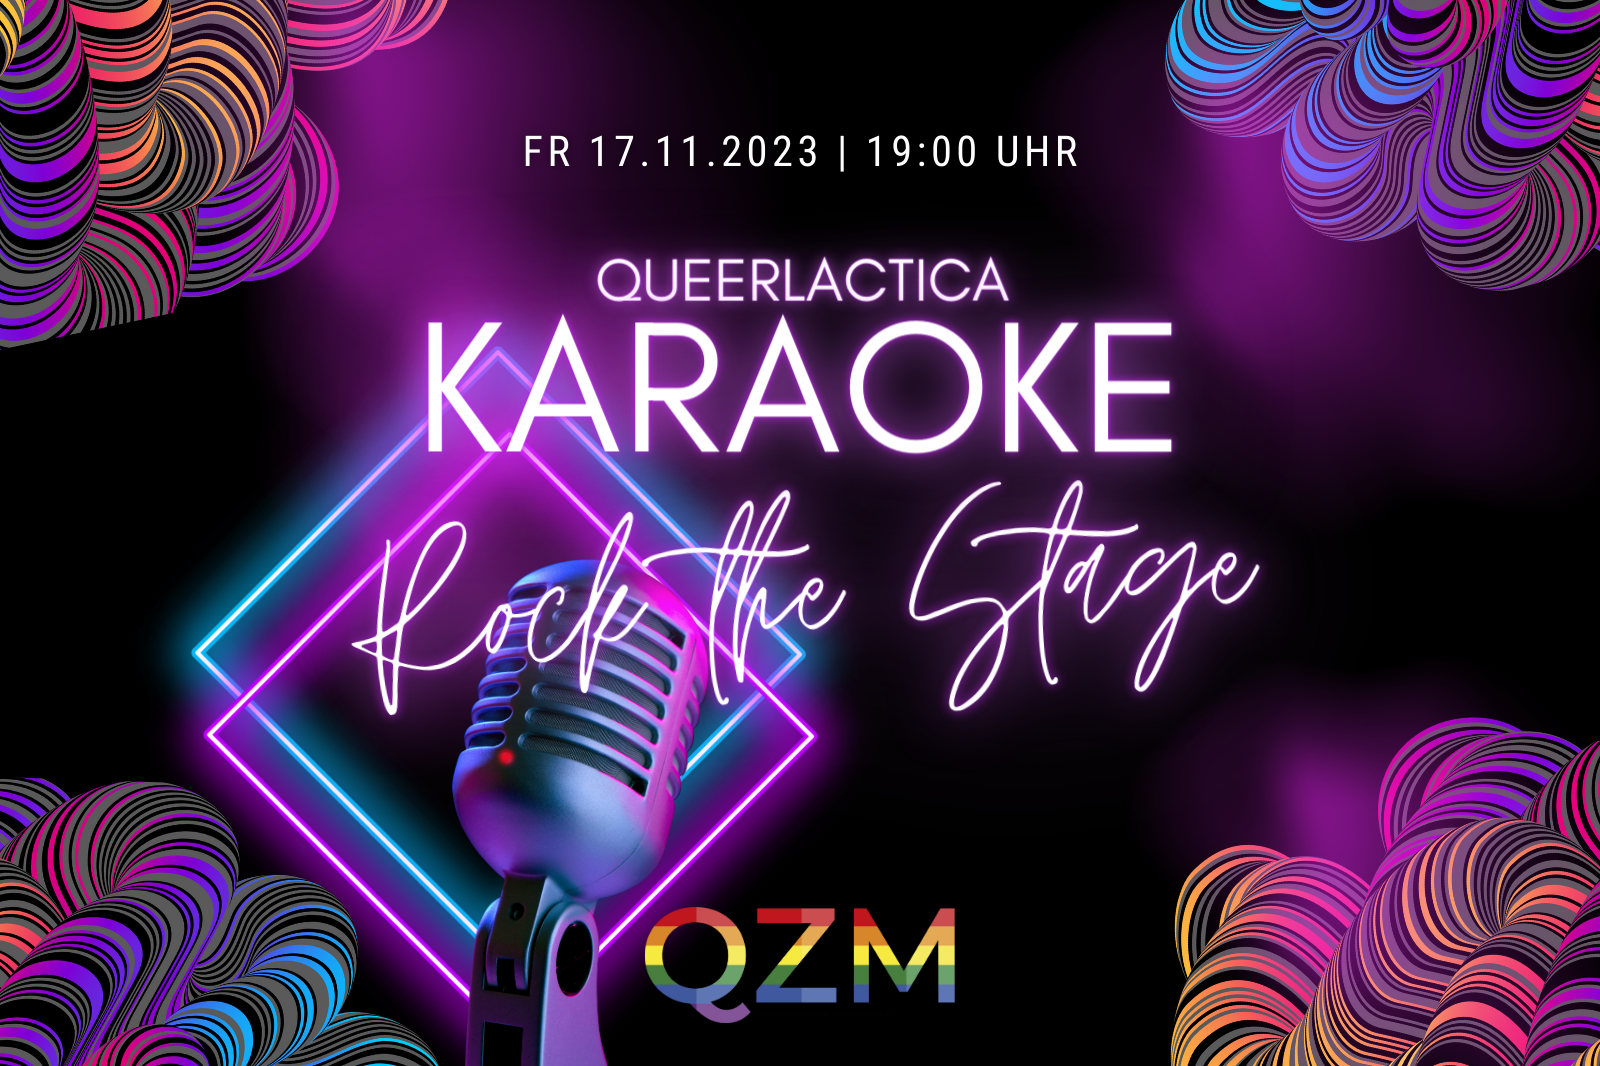 In leuchtendem Lila steht auf dem Bild "Queerlactica Karaoke. Rock the stage." Es sind ein paar Verzierungen zu sehen, die an einen Disco-Abend erinnern. Außerdem ist ein Mikro und das QZM-Logo zu sehen.